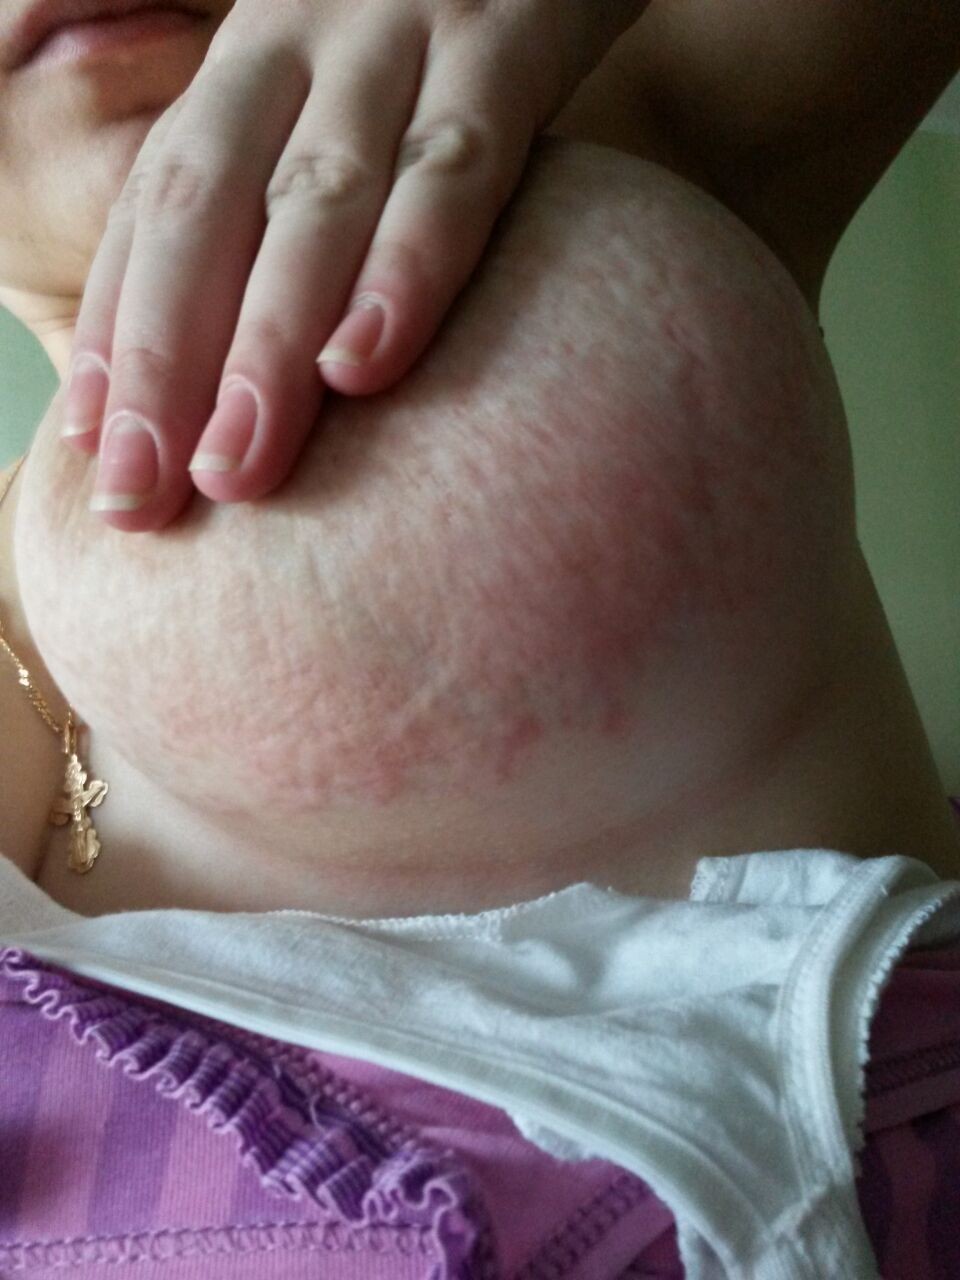 кожа груди чешется у женщин фото 27